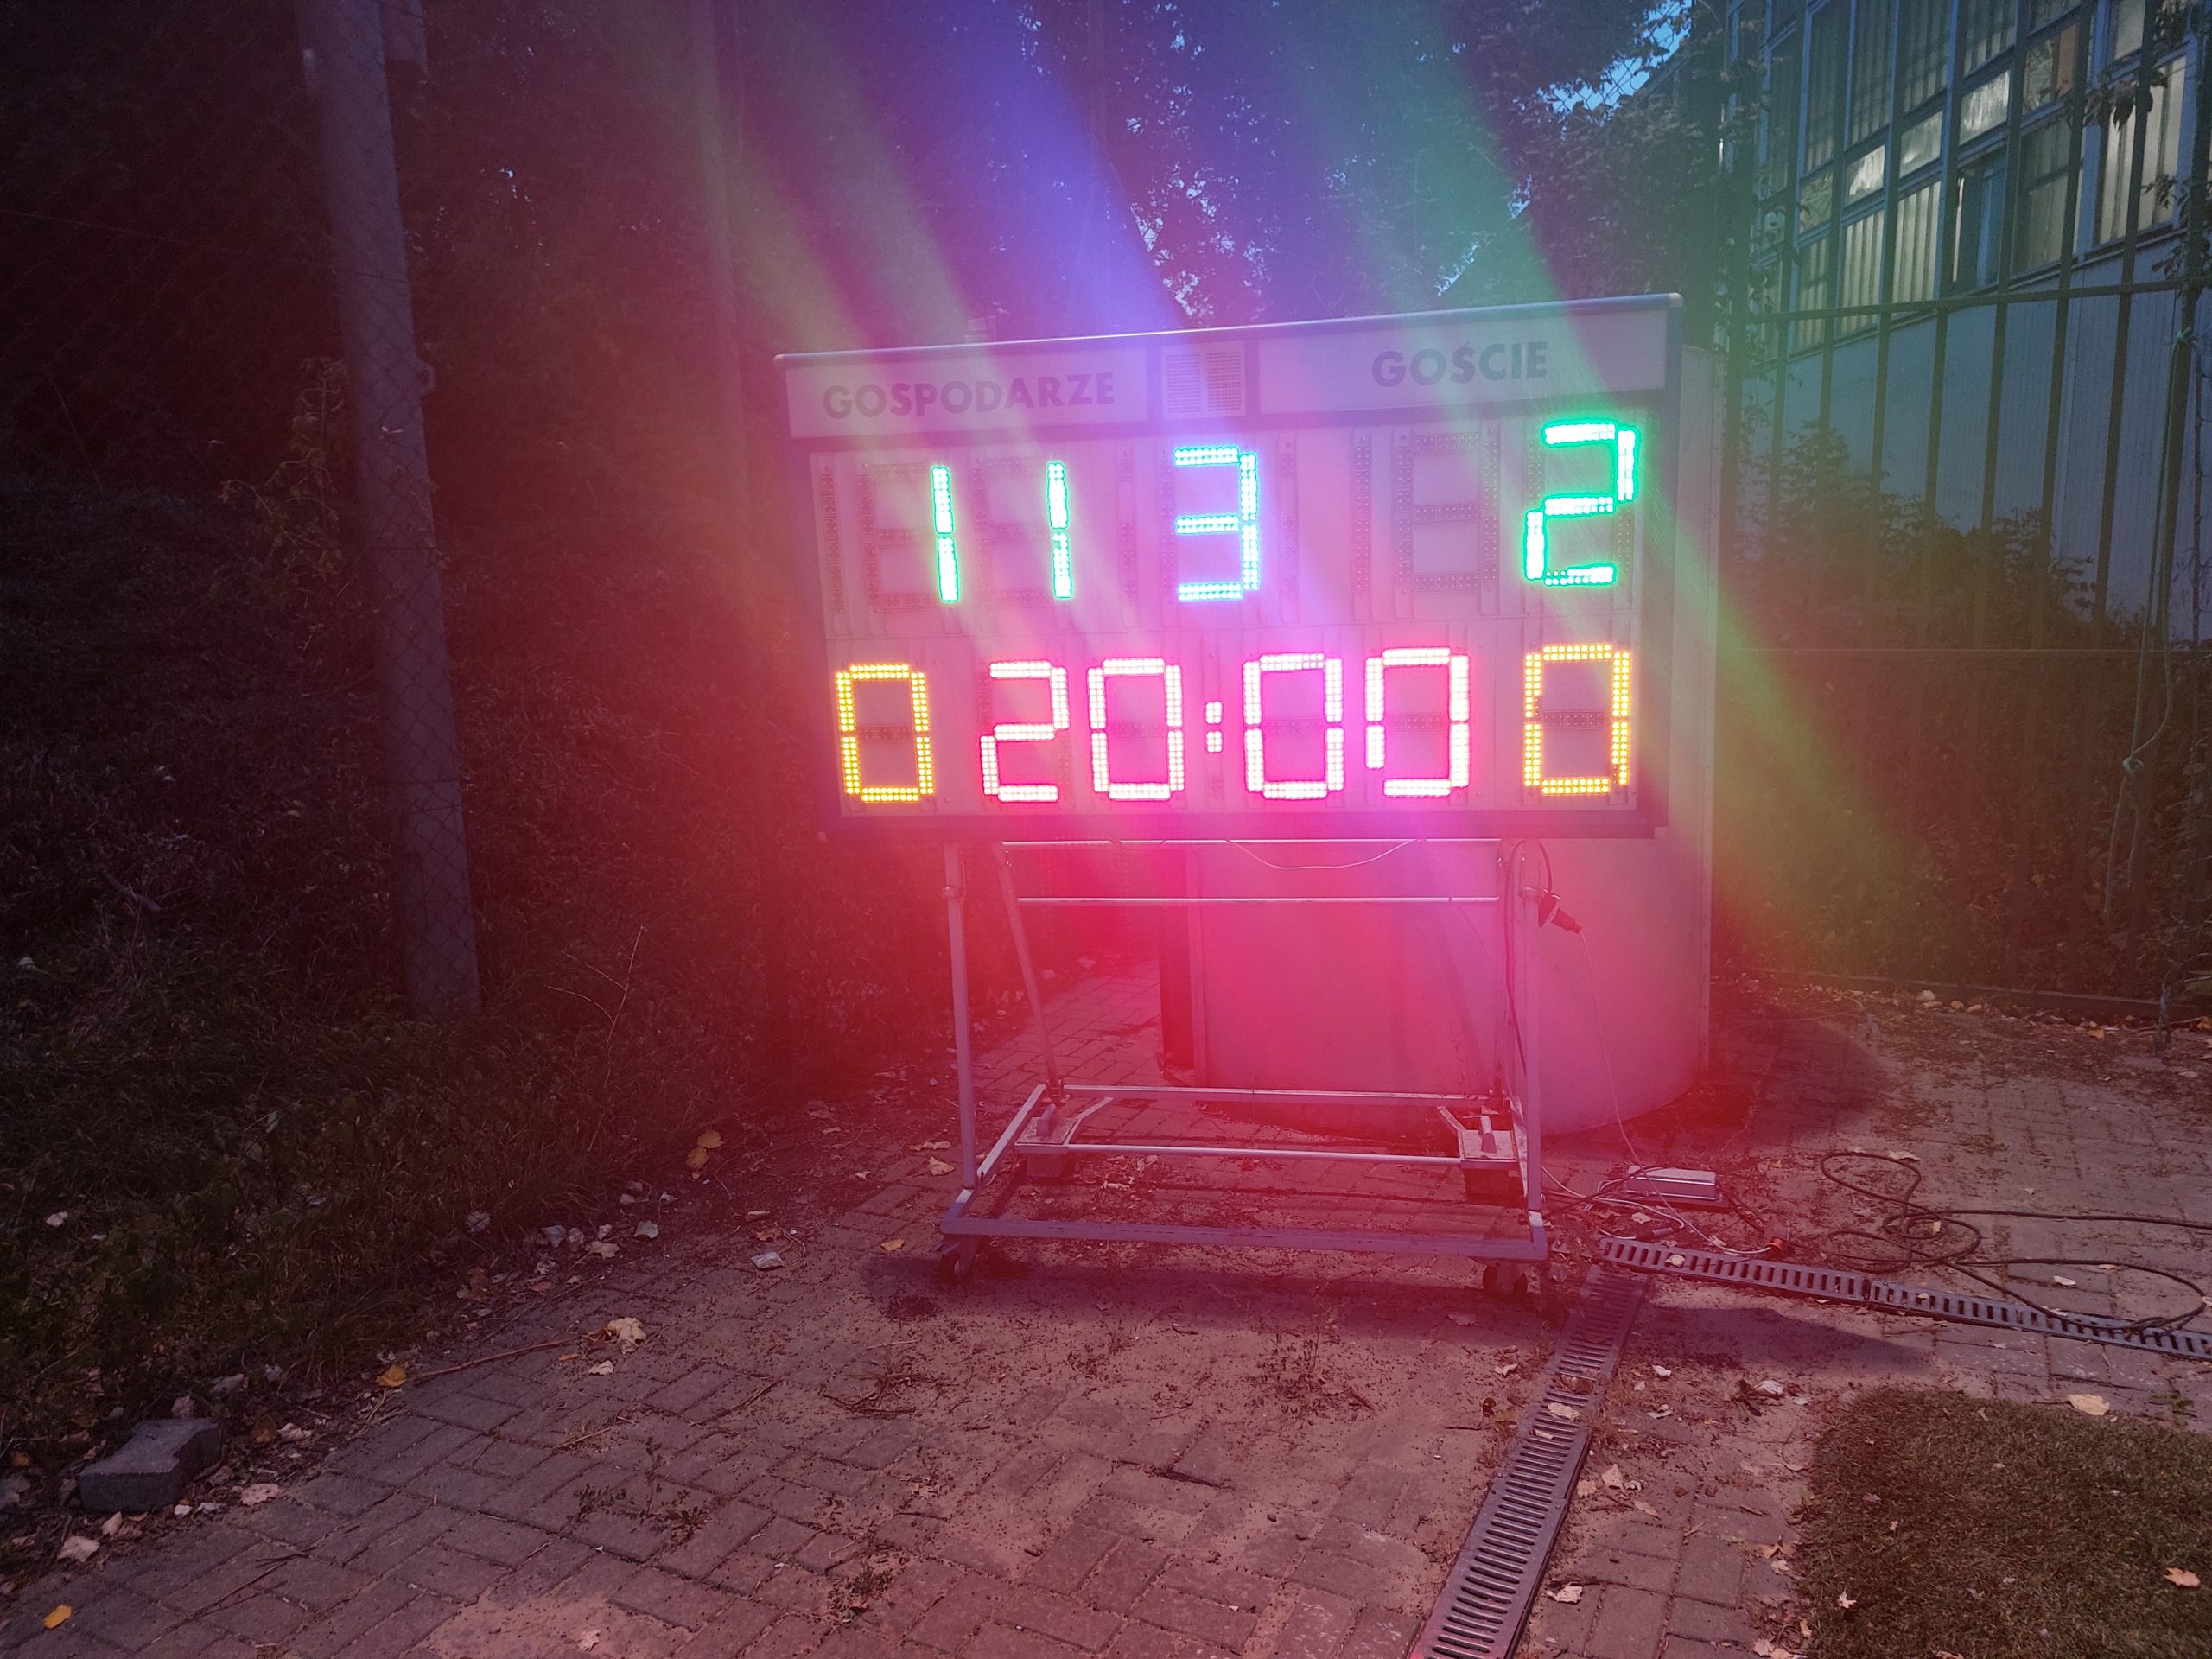 Mecz sparingowy 8 września 2022r. Wynik meczu korzystny dla gospodarzy Piekarnia Grzybki.